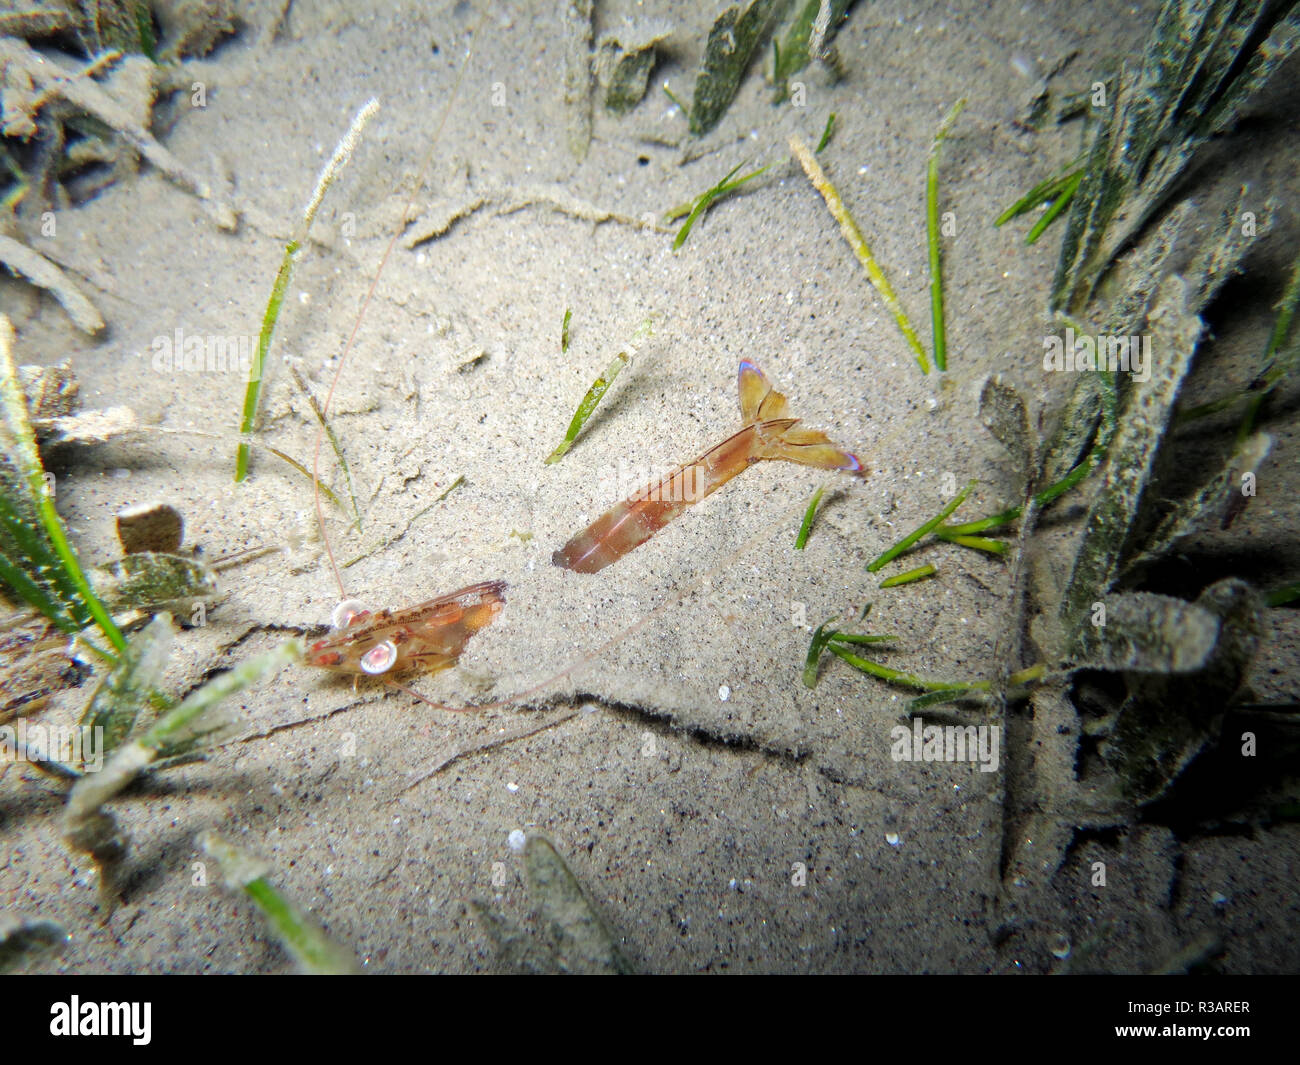 penaeus shrimp Stock Photo